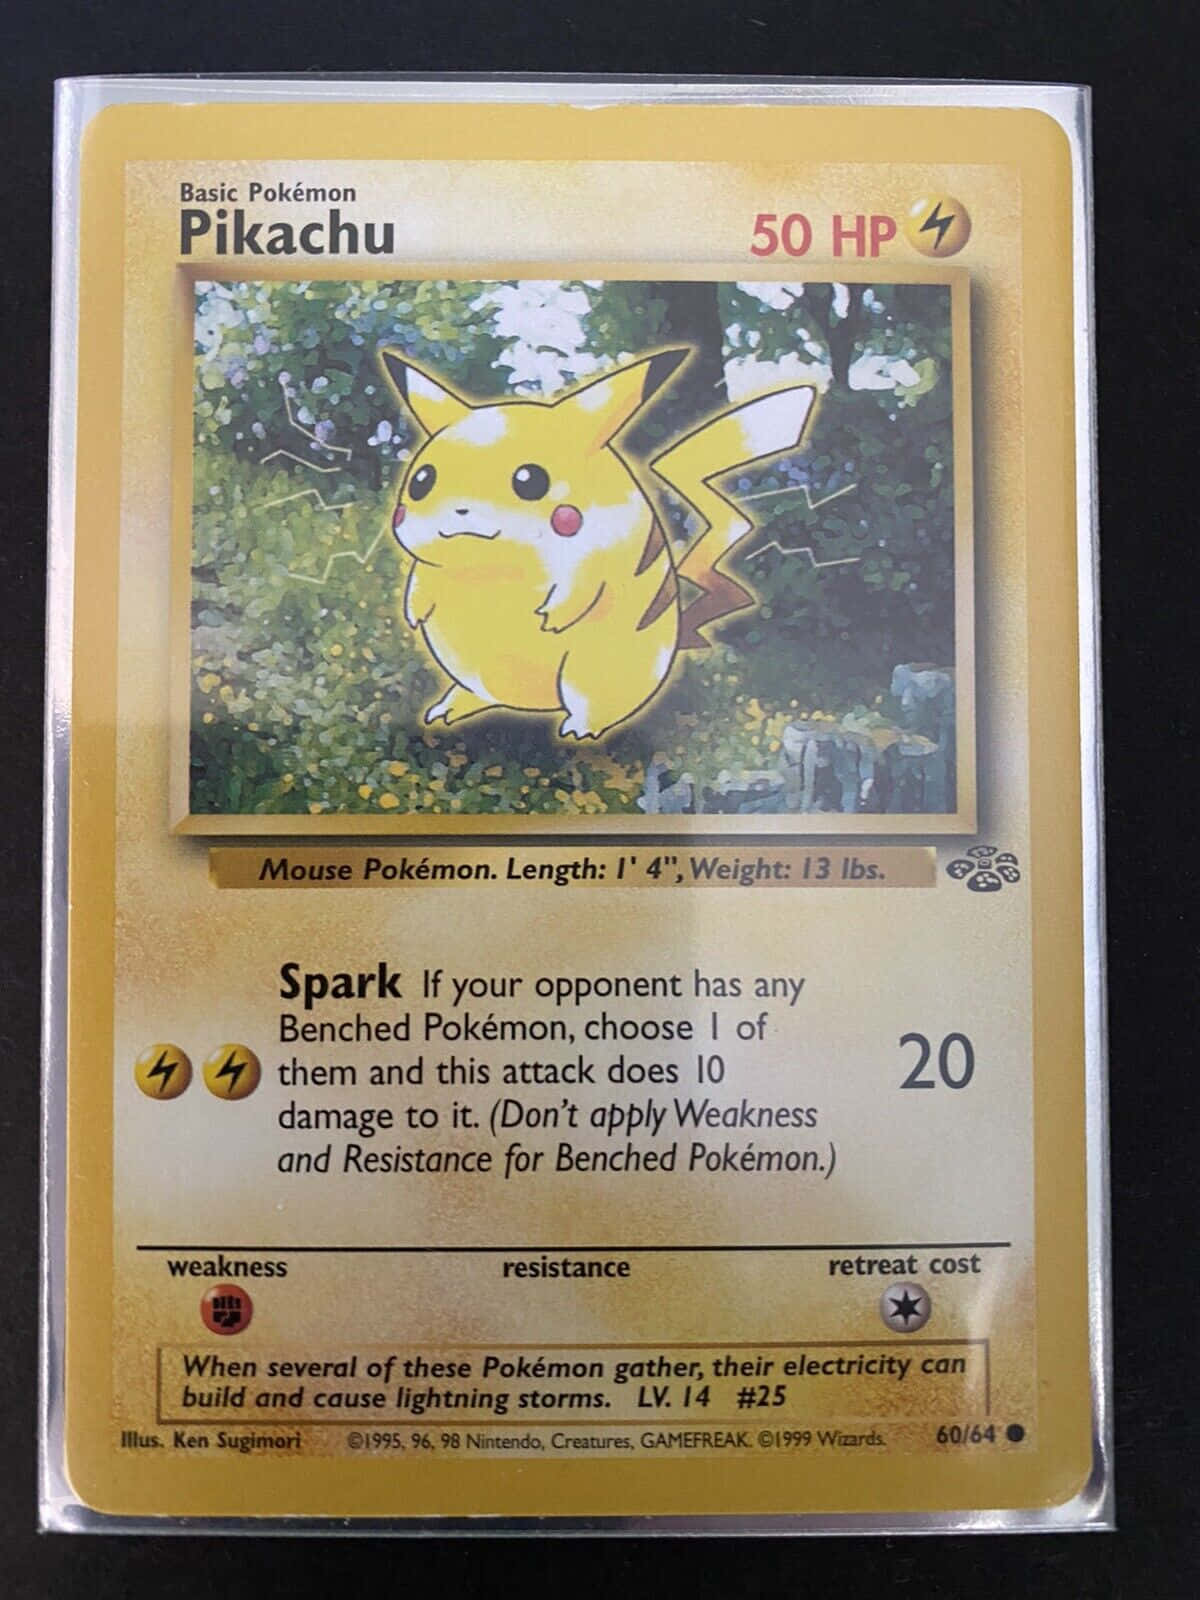 Vintage Pikachu Pokemon Card Background